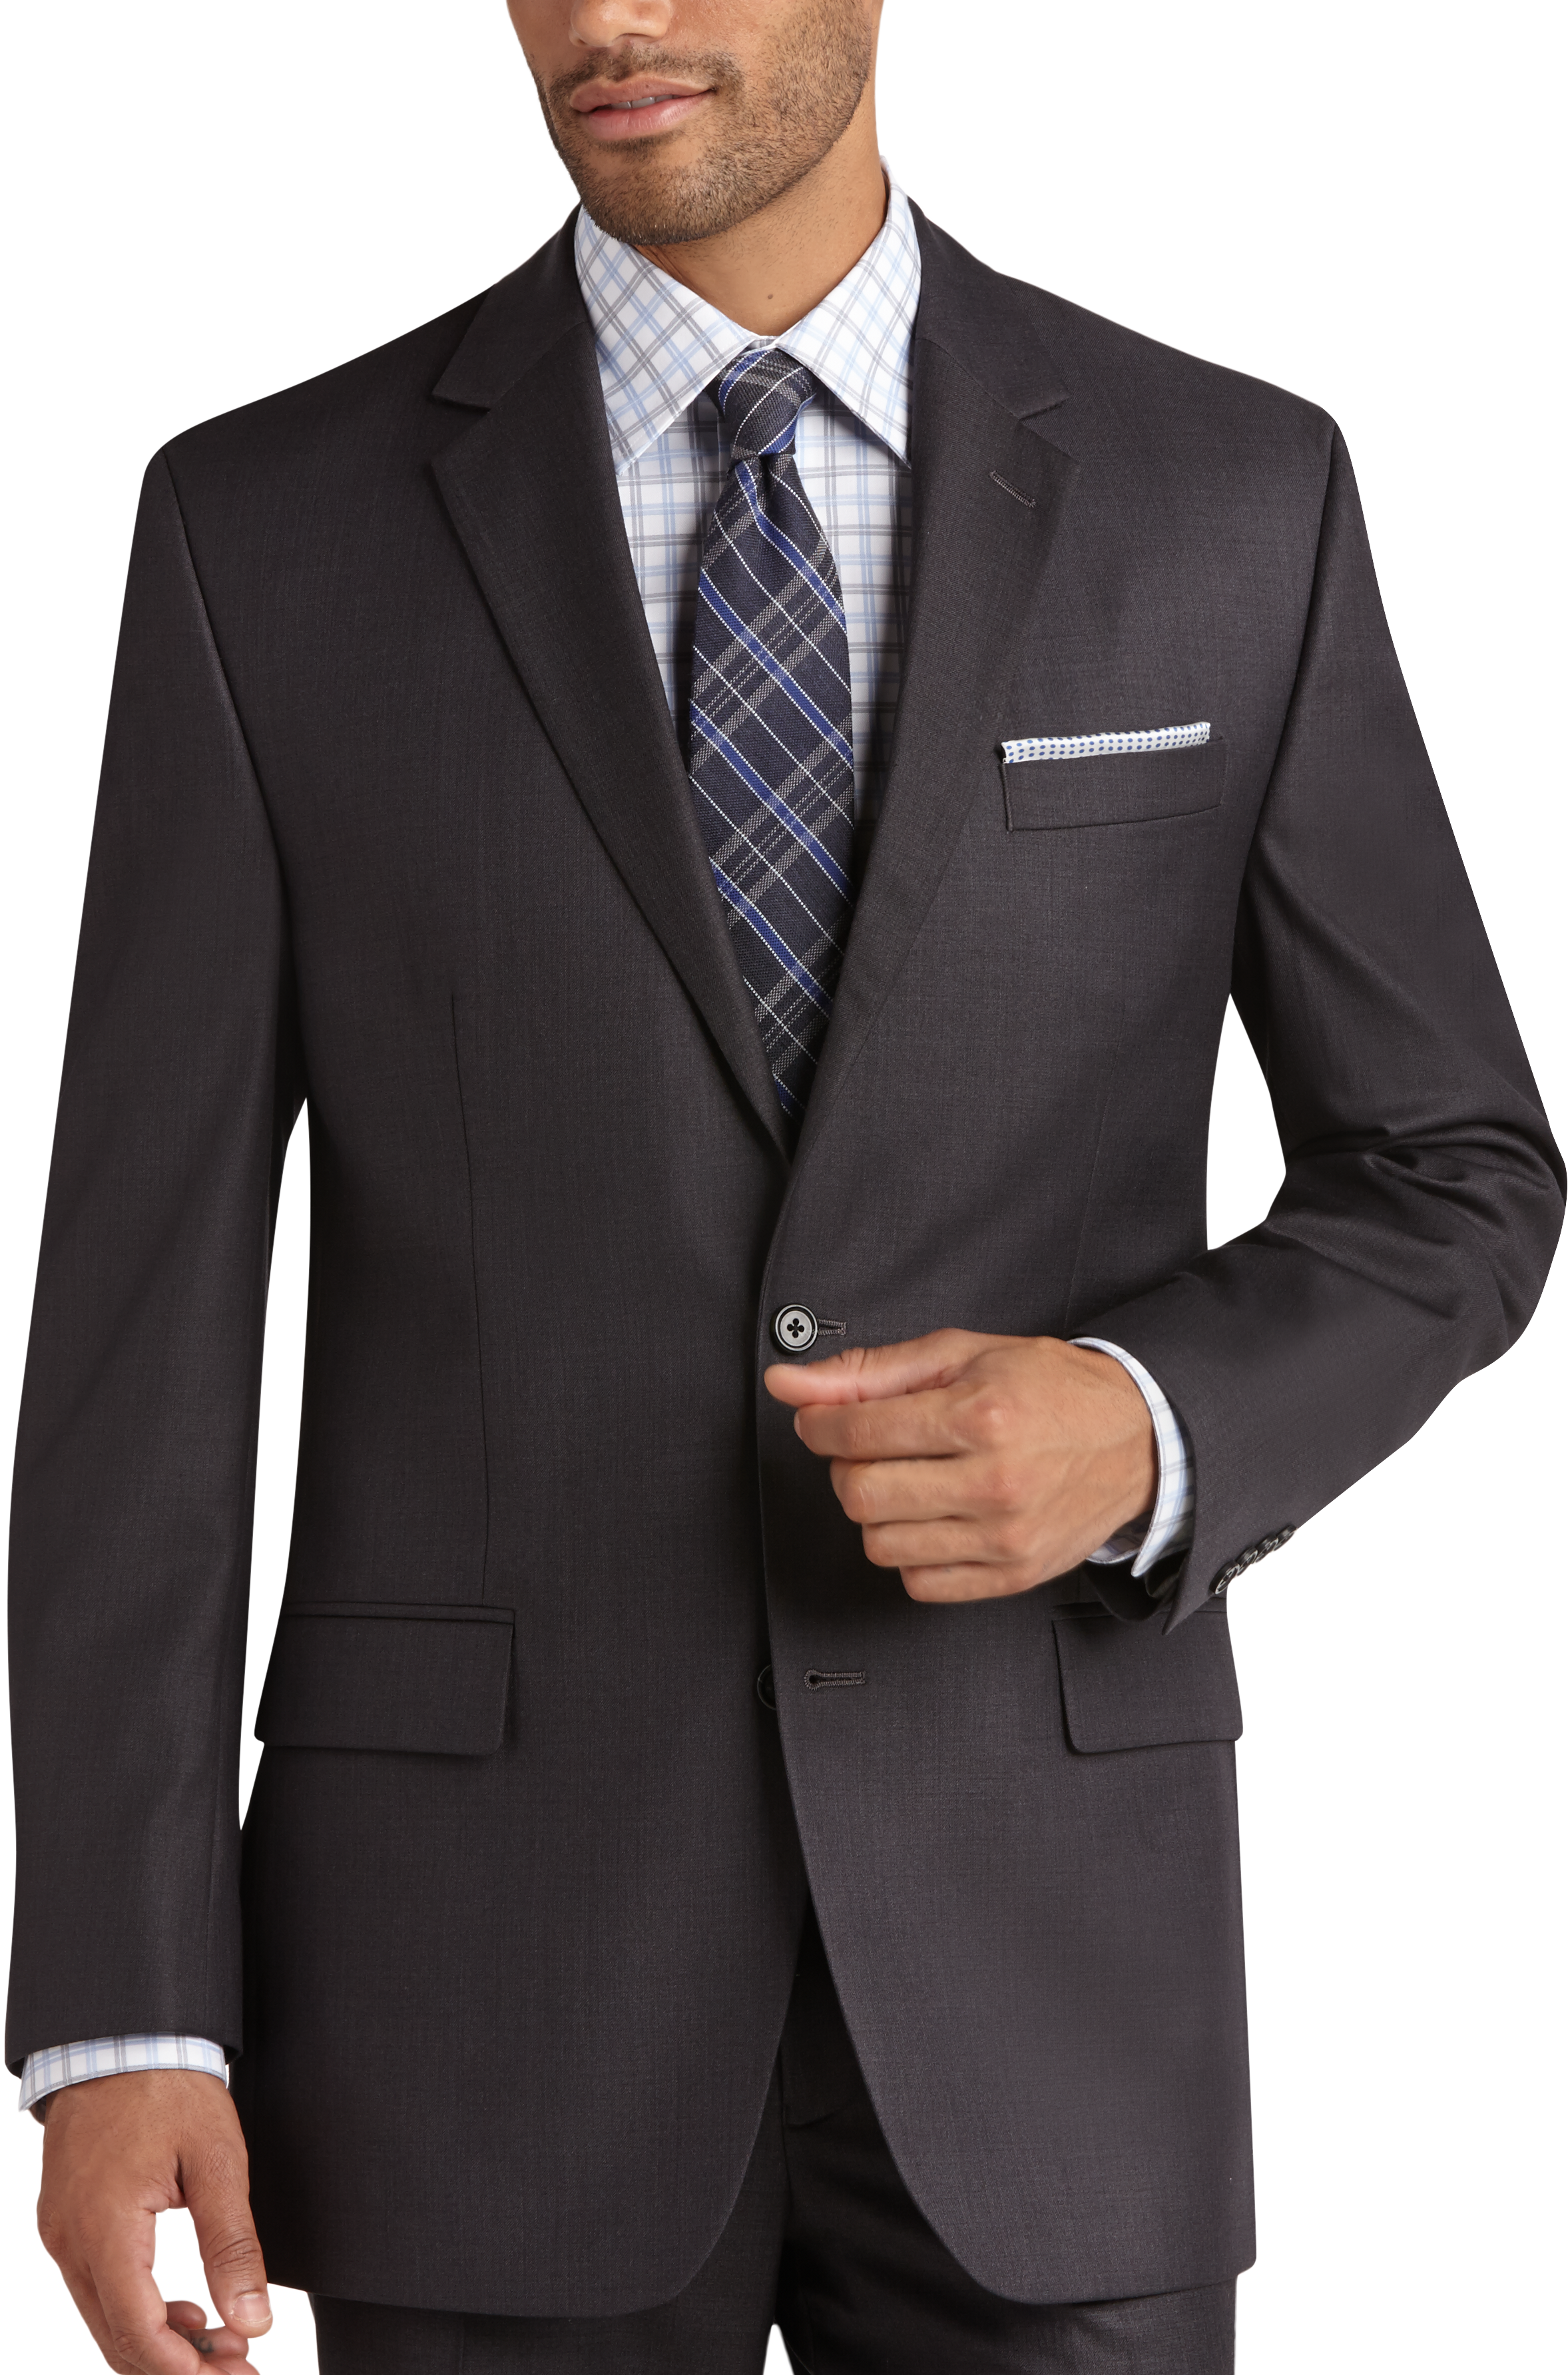 Michael Kors Charcoal Gray Slim Fit Suit - Men's Sale | Men's Wearhouse